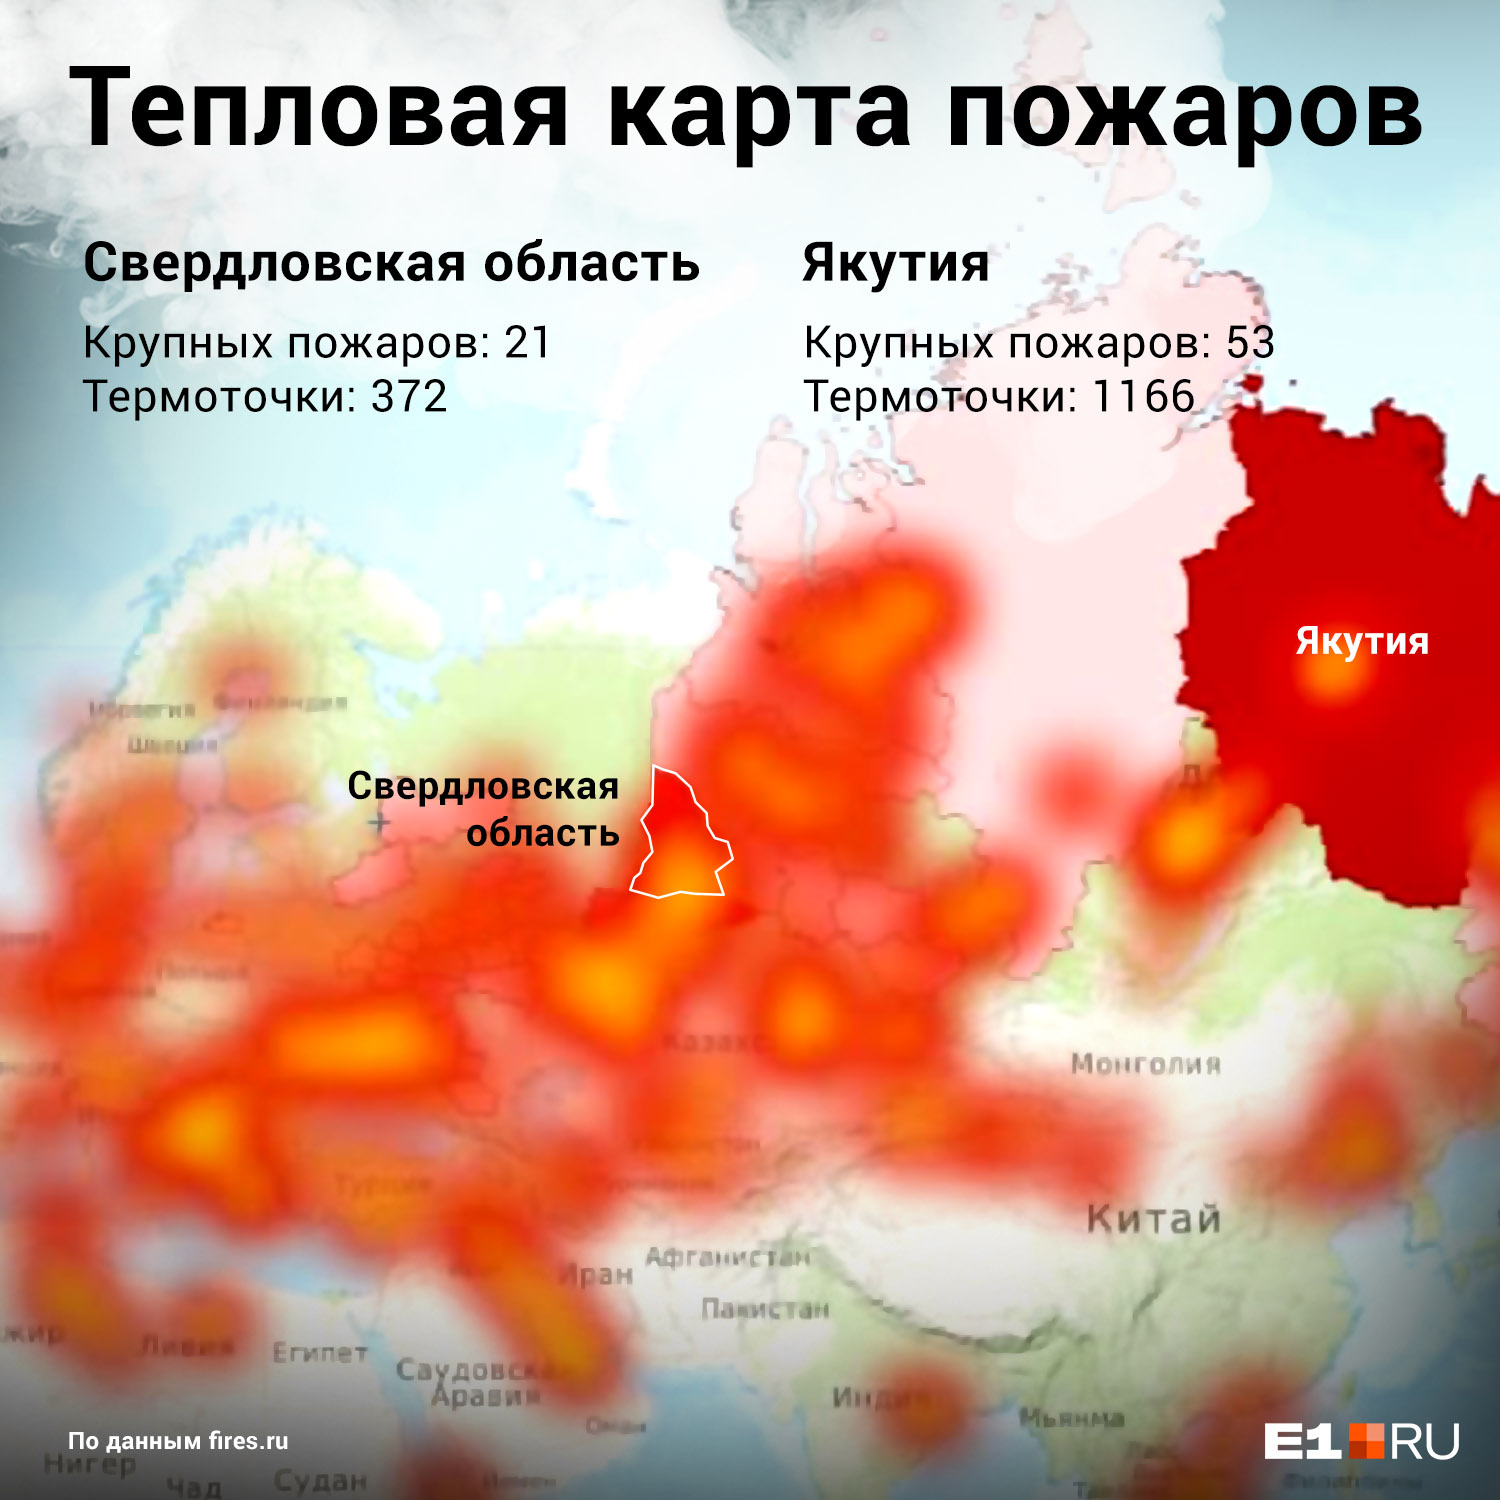 На карте пожаров Свердловская область выделена красным цветом, хуже ситуация только в Якутии, она подсвечена бордовым.